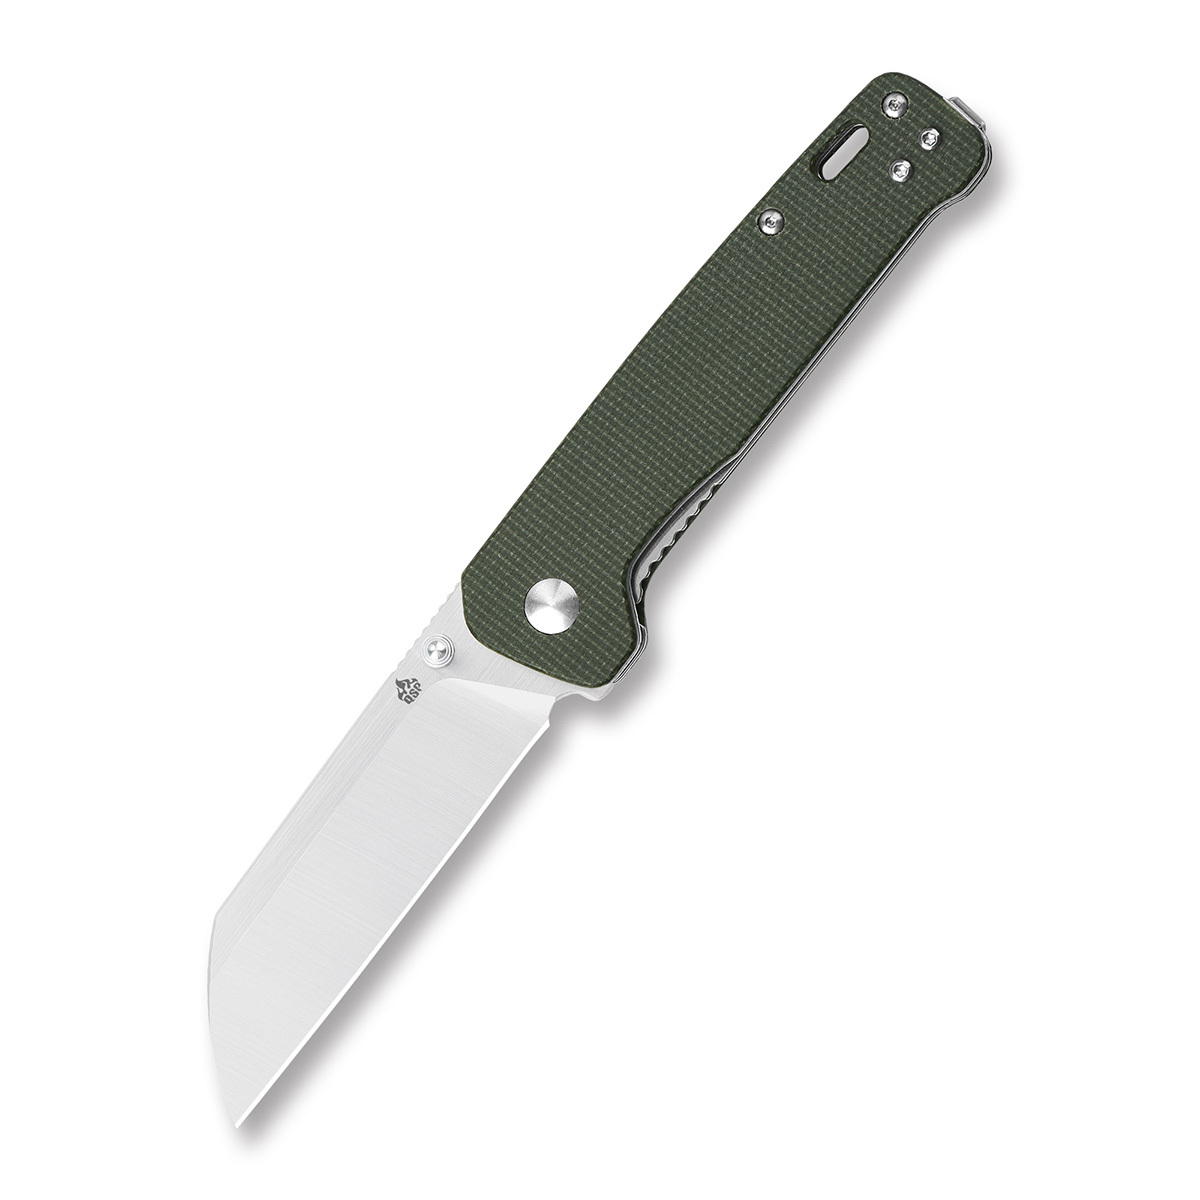 Складной нож QSP Penguin, сталь D2, рукоять микарта, зеленый, Бренды, QSP